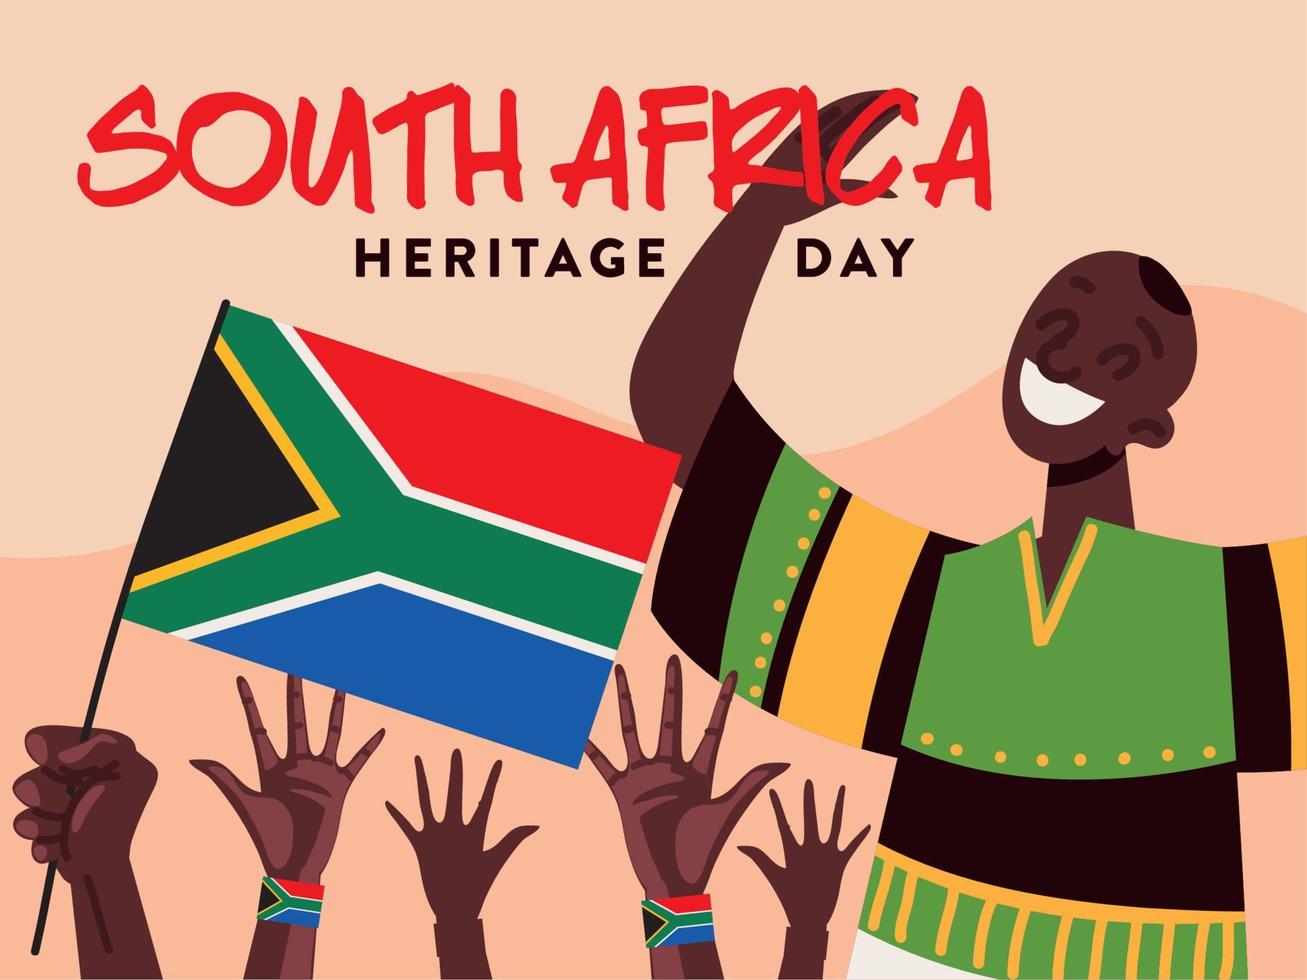 événement de la journée du patrimoine en afrique du sud vecteur